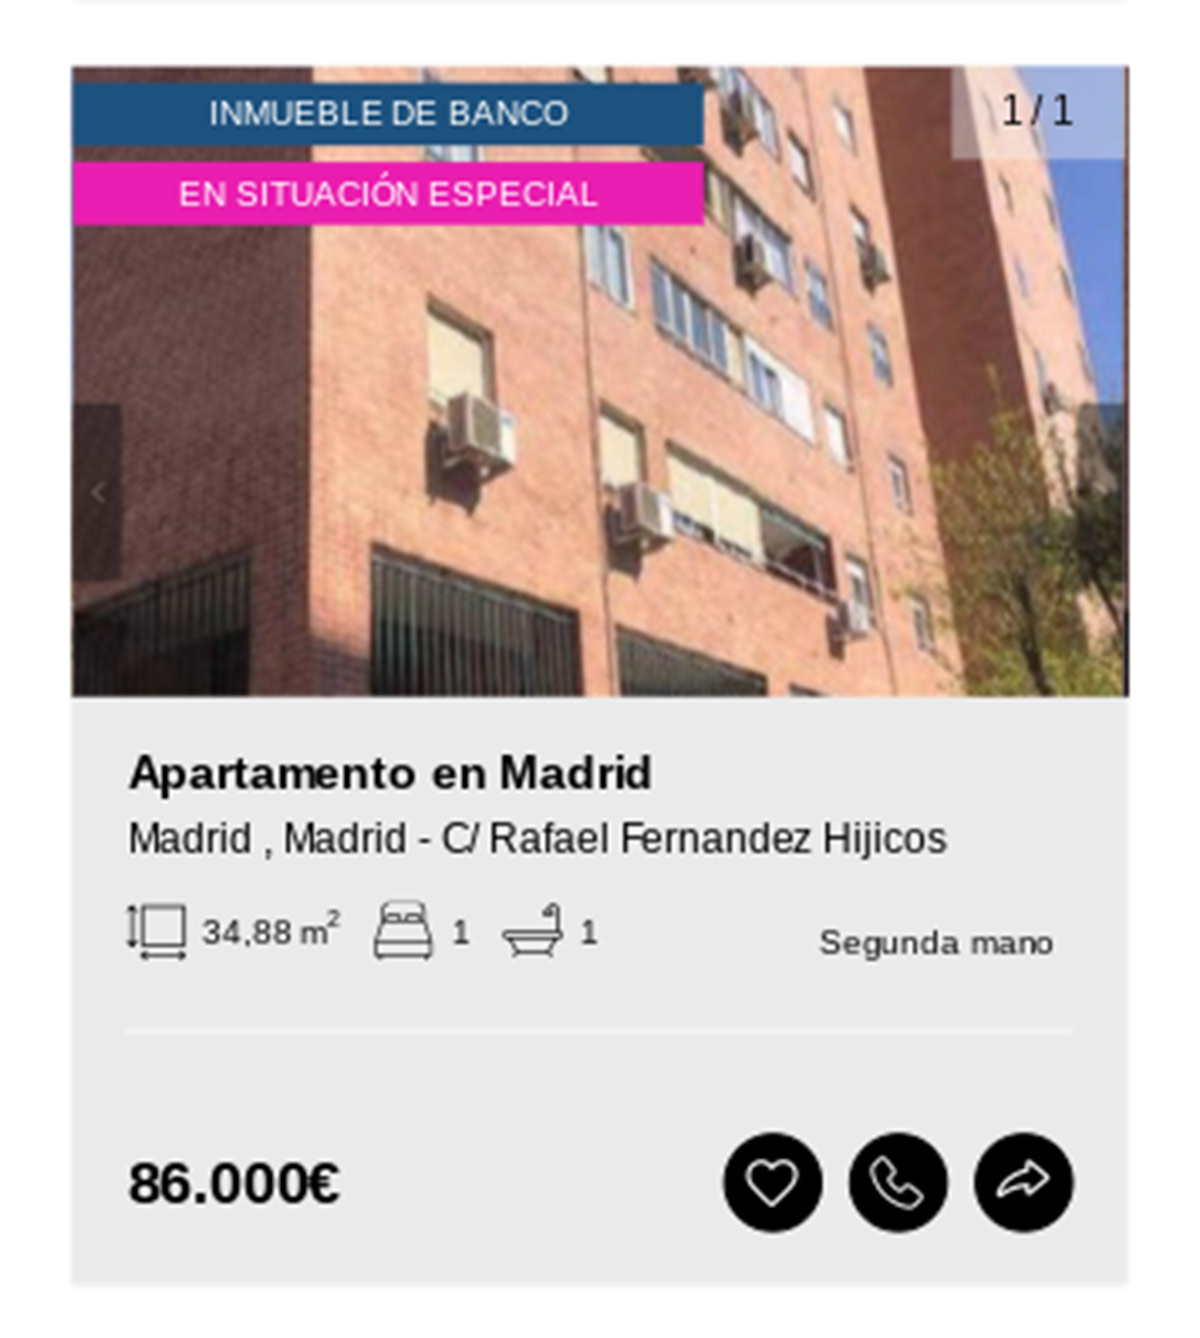 Piso en Madrid de Solvia por 86.000 euros